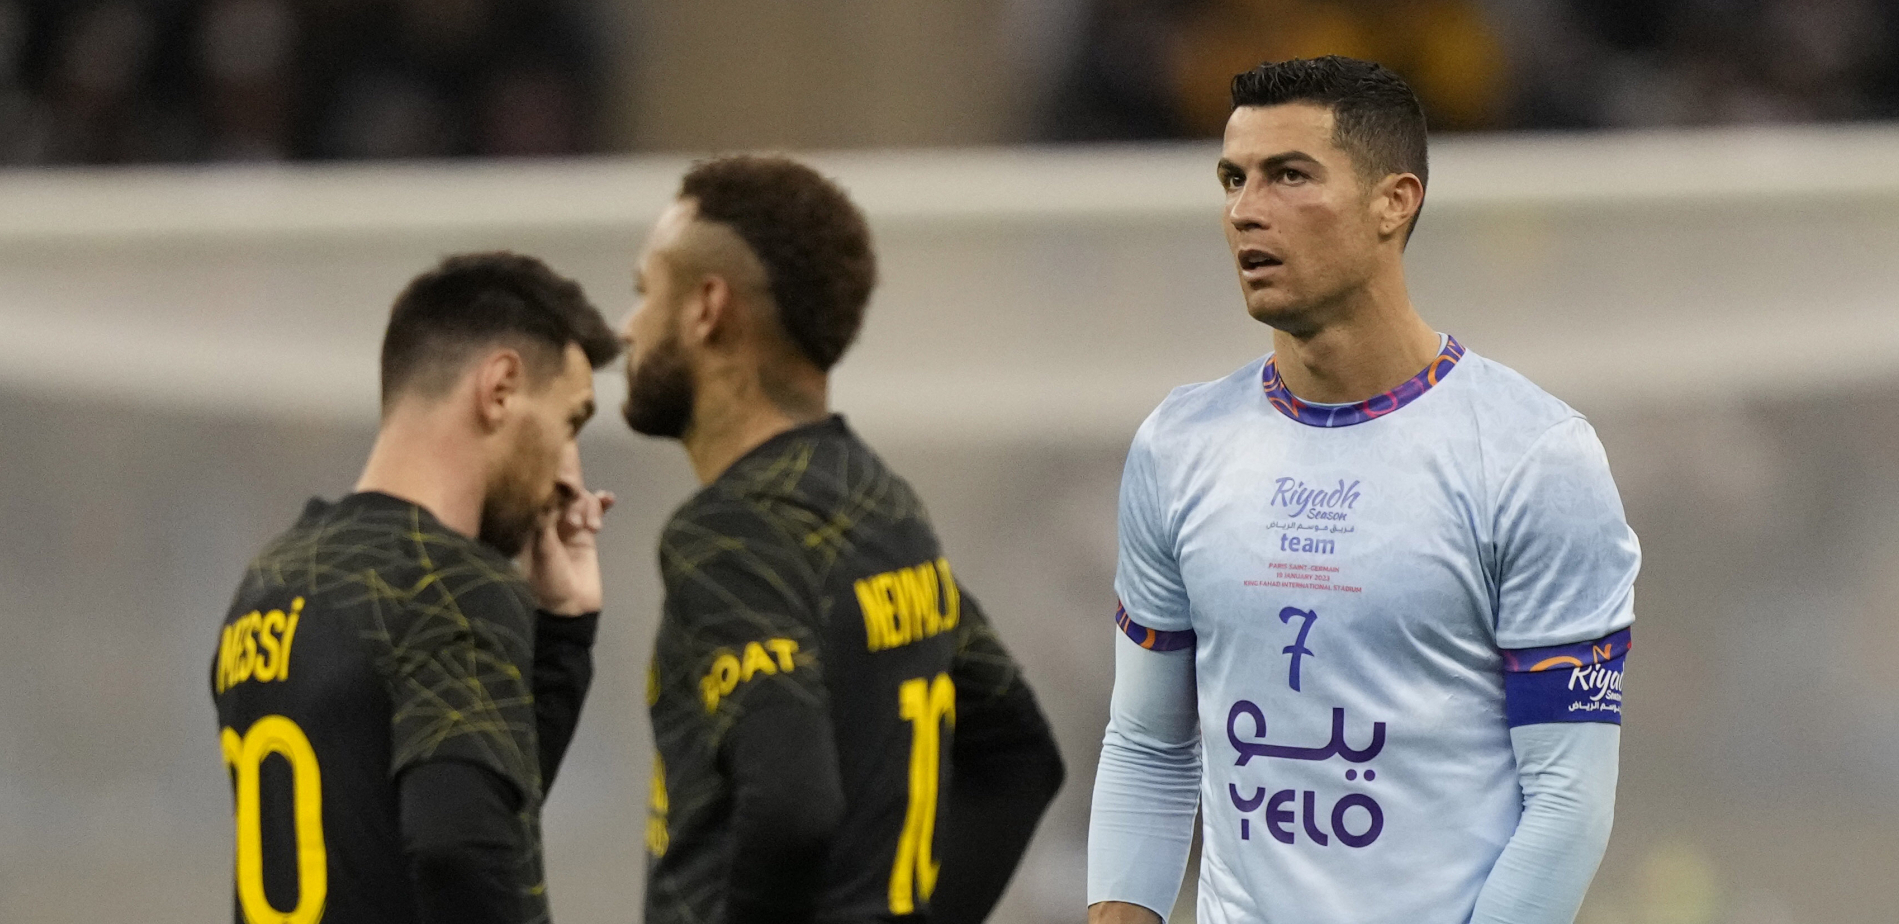 NIŠTA OD TITULE ZA PORTUGALCA Ronaldo izvisio u Saudijskoj Arabiji, Al Nasru se nije isplatila investicija